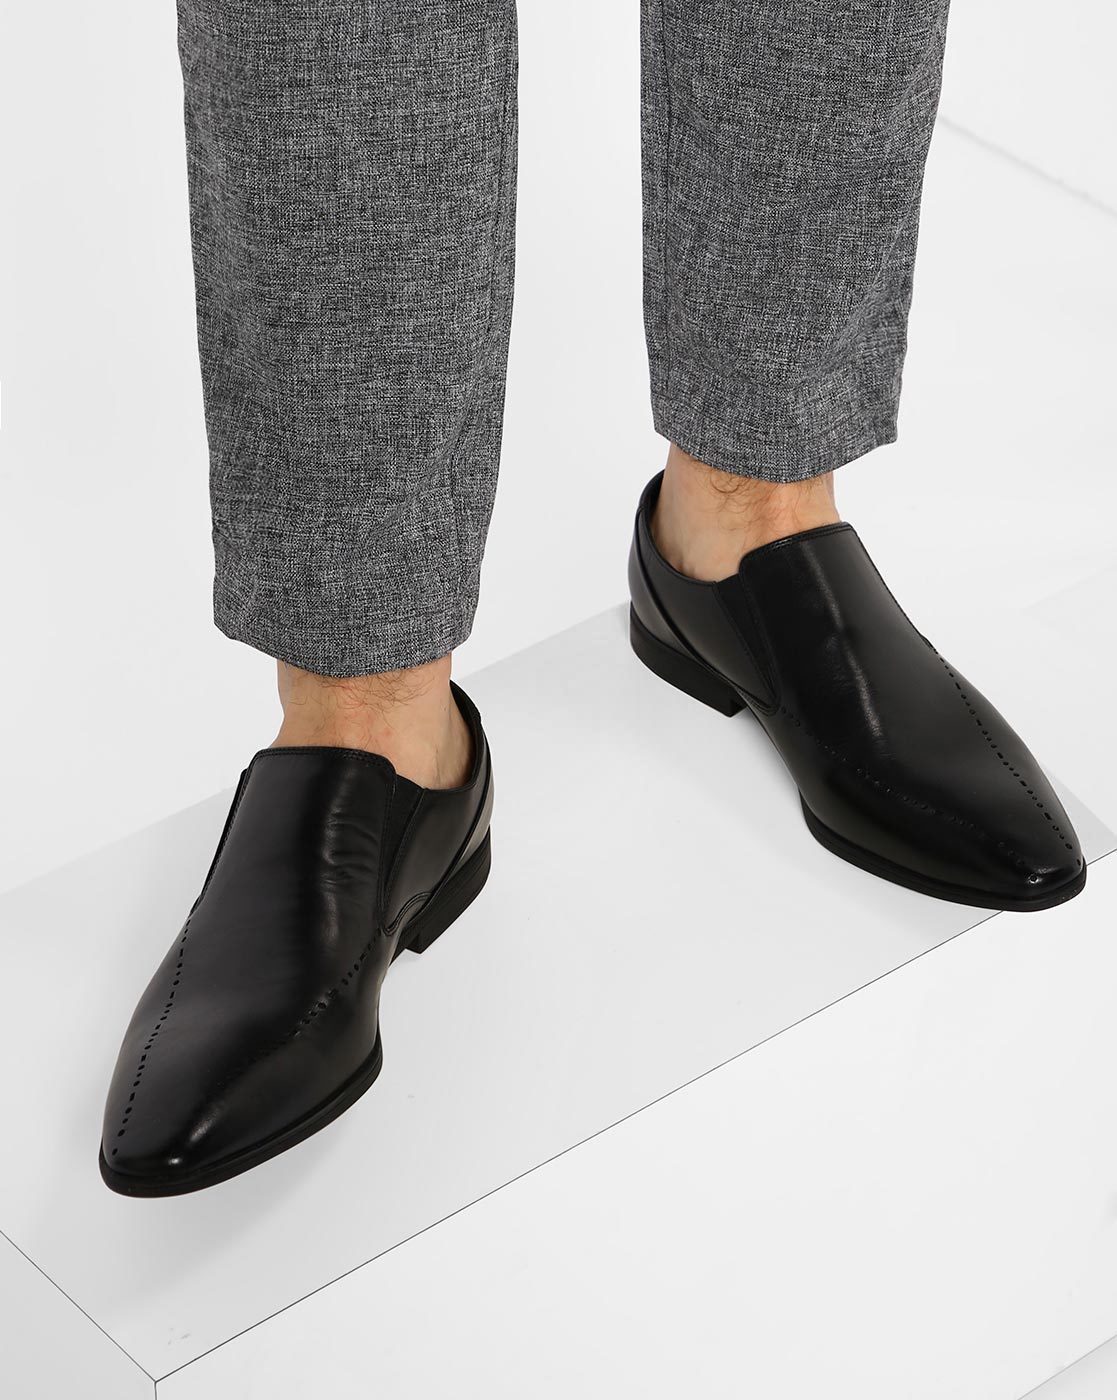 udtale fløjte Mockingbird Buy Black Formal Shoes for Men by CLARKS Online | Ajio.com